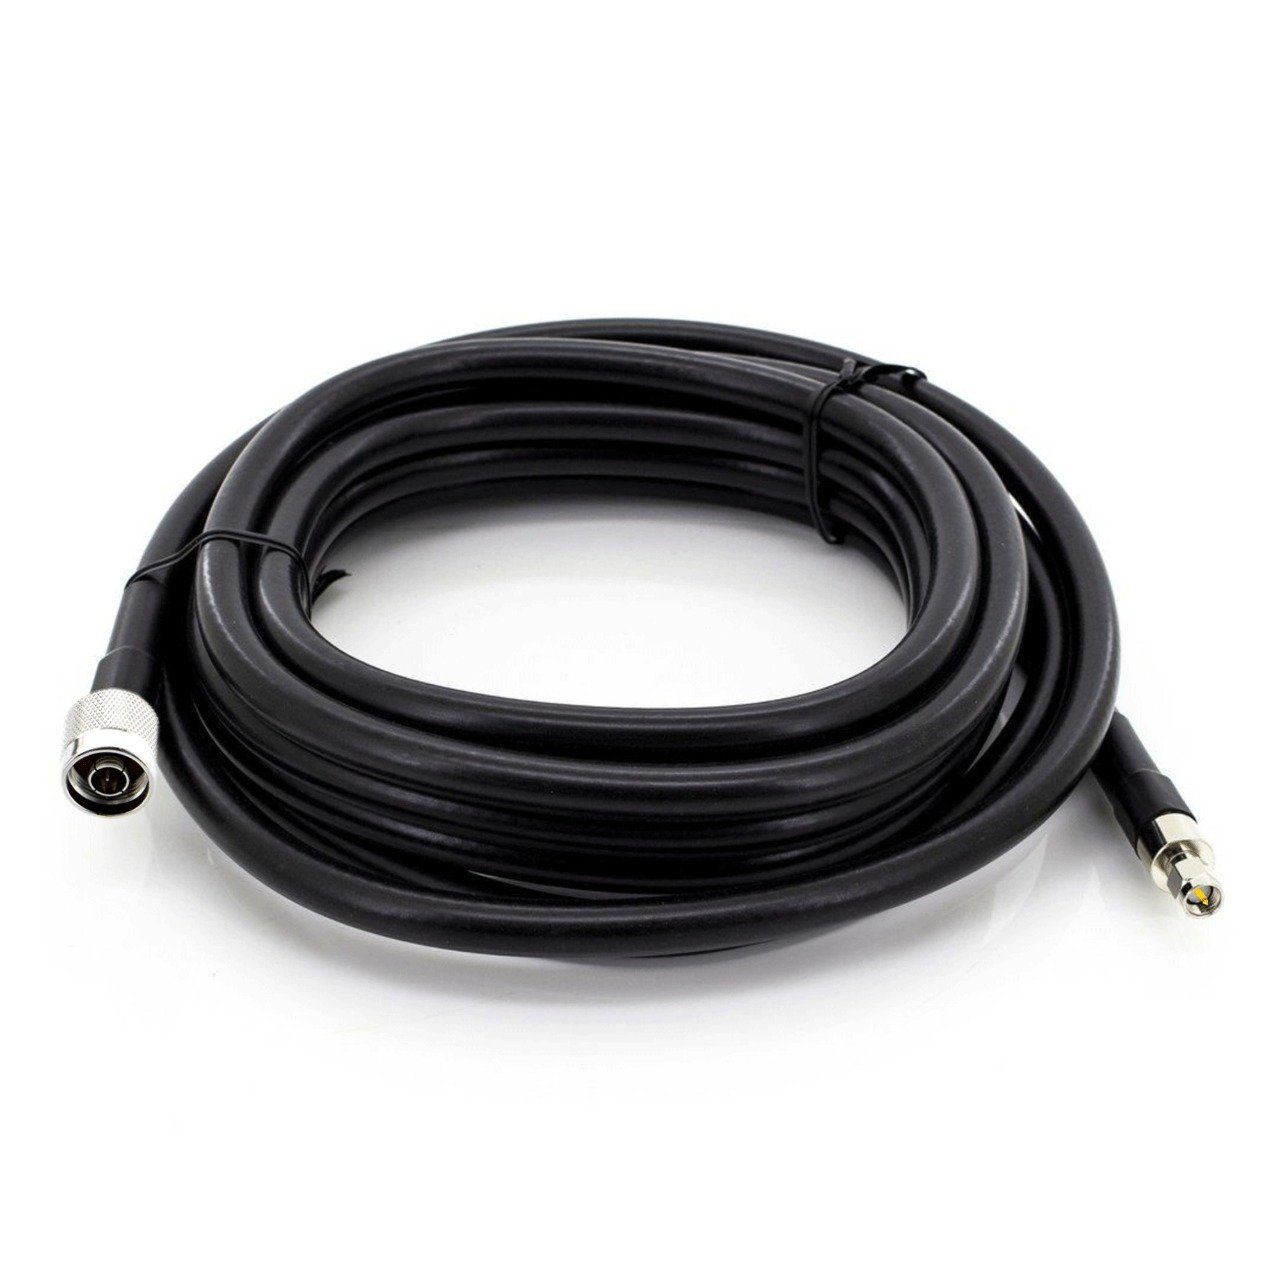 Baker kabel, LMR400, SMA (200 kabel, 3g N lte Verlängerungskabel, kabel 4g männlich, männlich cm), kabel, wifi BK-400MM